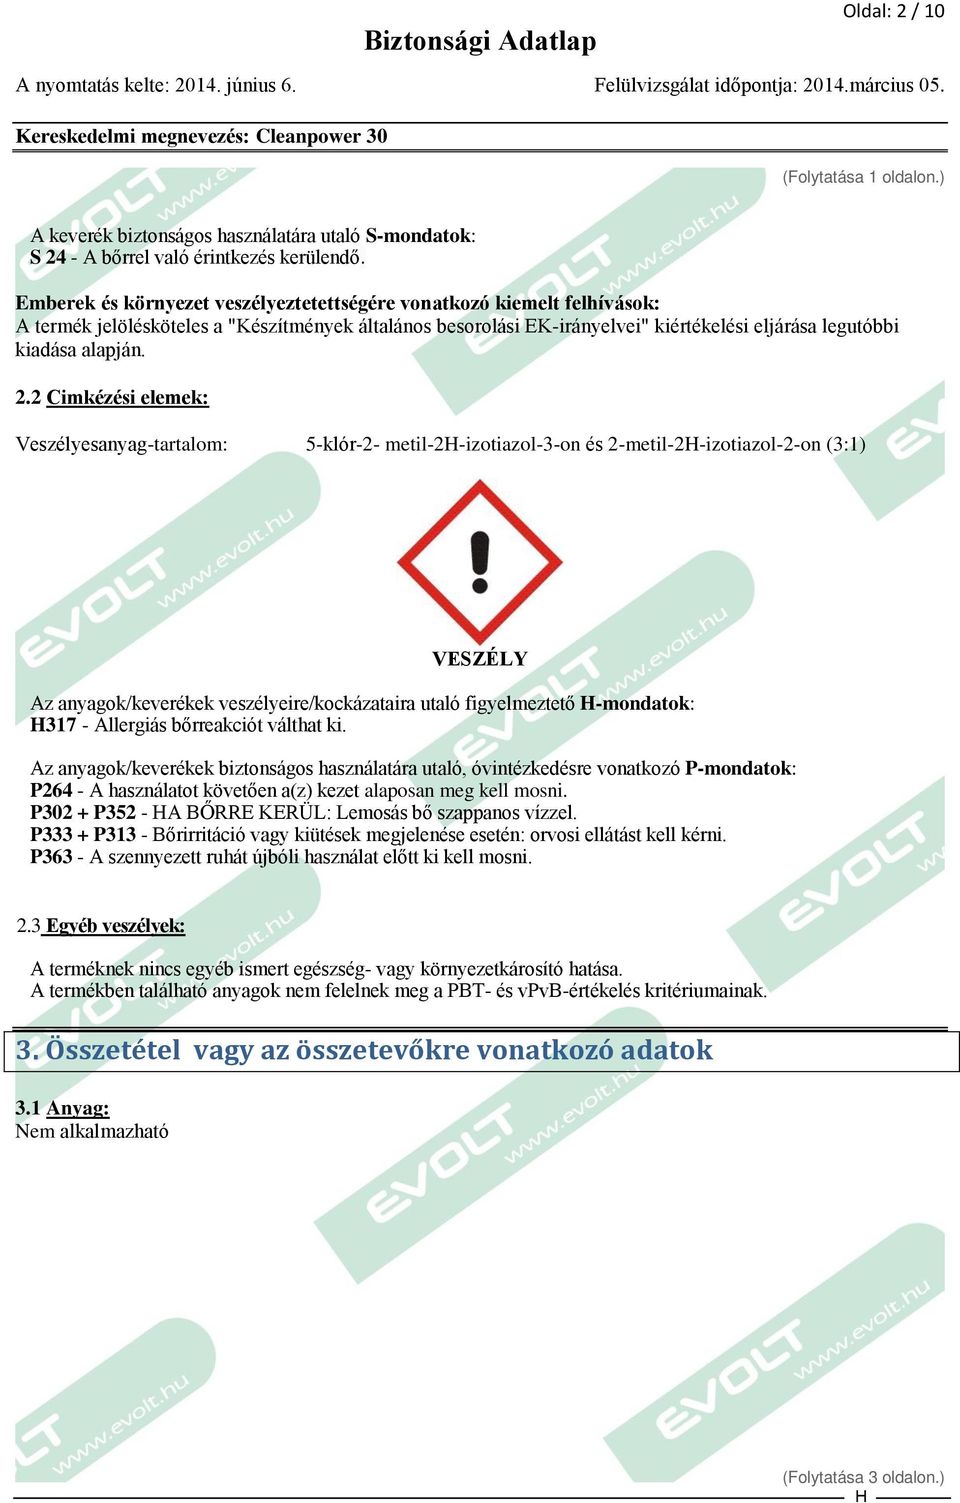 2 Cimkézési elemek: Veszélyesanyag-tartalom: 5-klór-2- metil-2-izotiazol-3-on és 2-metil-2-izotiazol-2-on (3:1) VESZÉLY Az anyagok/keverékek veszélyeire/kockázataira utaló figyelmeztető -mondatok: